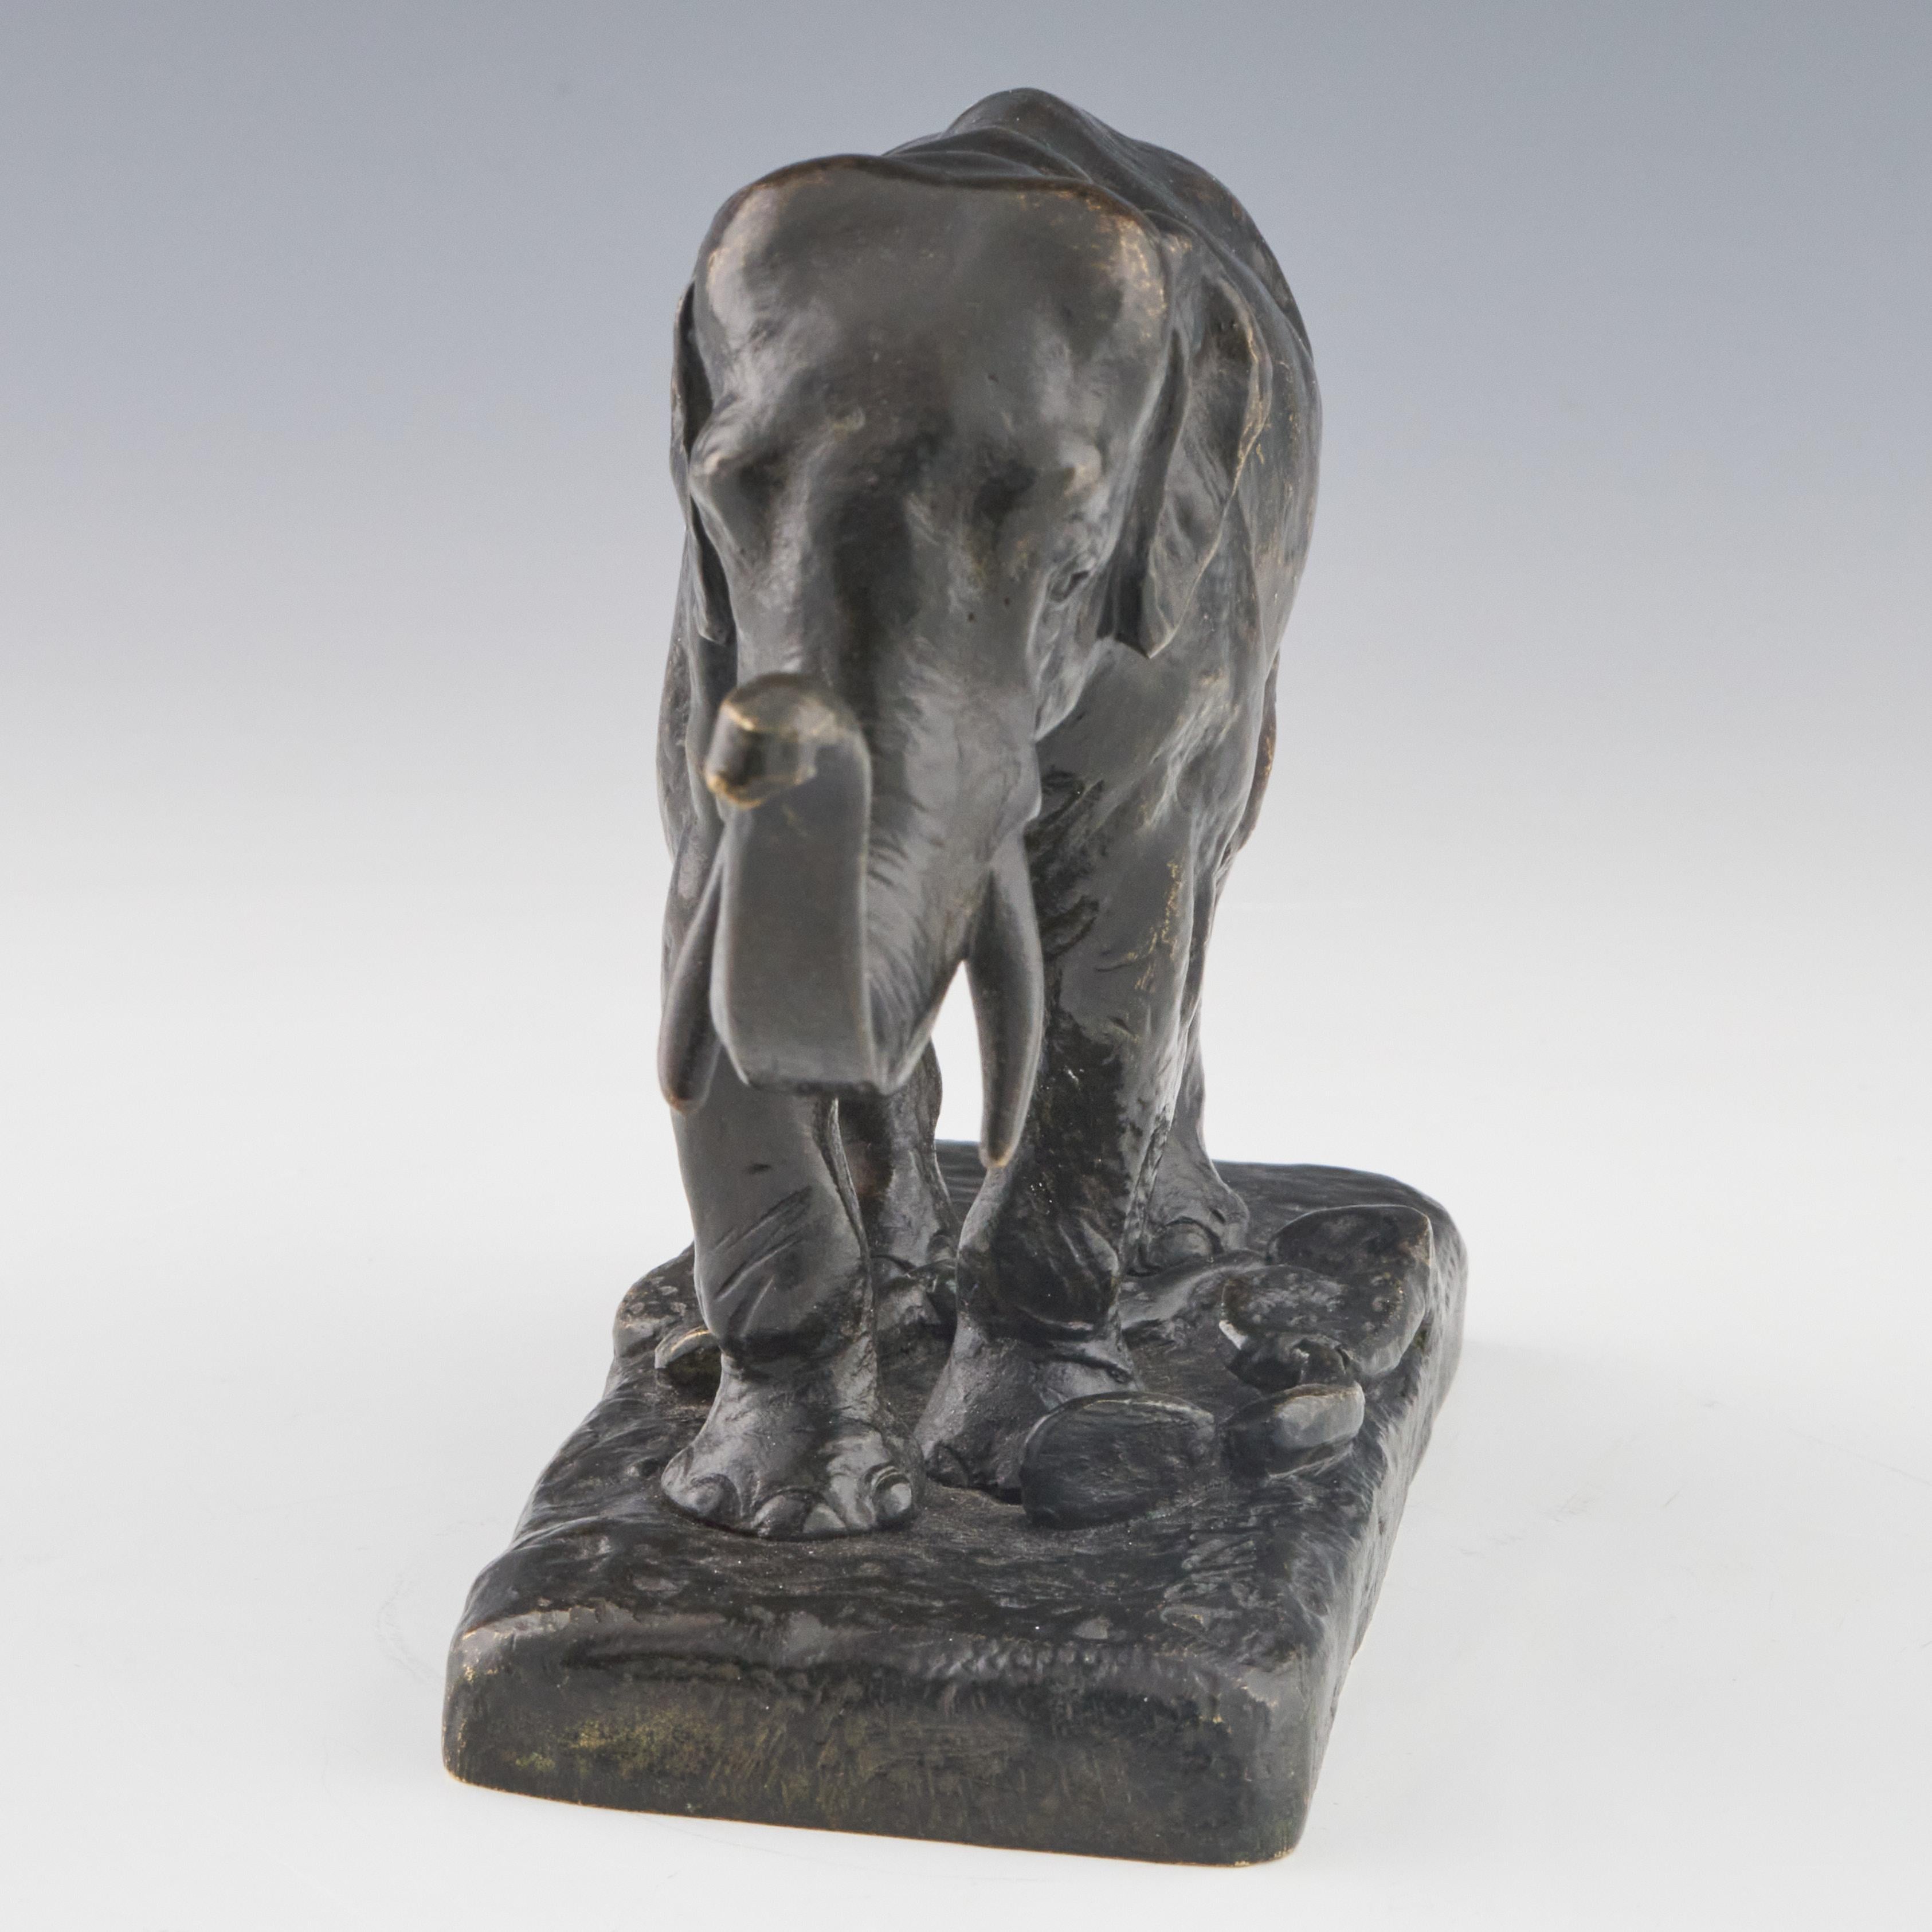 Sculpture en bronze du milieu du XIXe siècle représentant un éléphant d'Asie debout, la trompe relevée, par Alfred Barye (1839-1882). Riche patine d'usage, brun foncé, attendue avec l'âge. Sur une base naturaliste, signée A Barye. 

